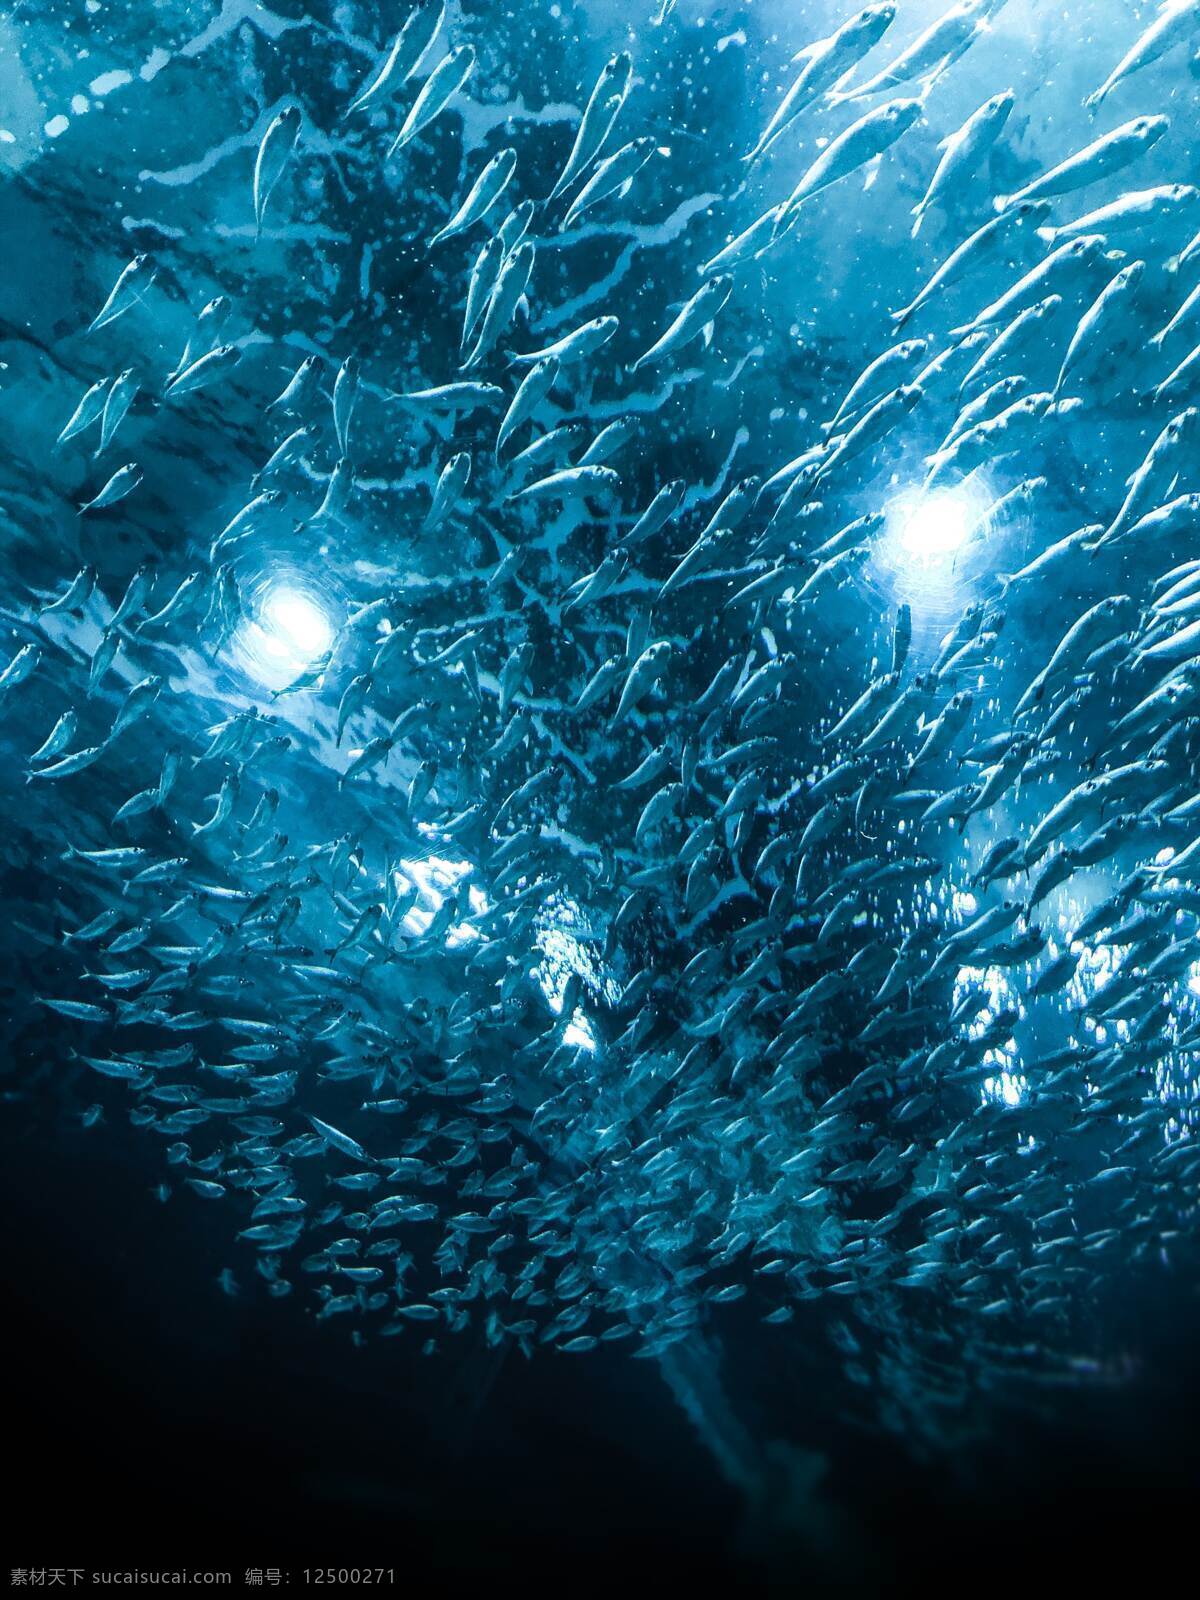 深海鱼群 深海 鱼 深海鱼 鱼群 大海 海洋 海底 海面 生物世界 海洋生物